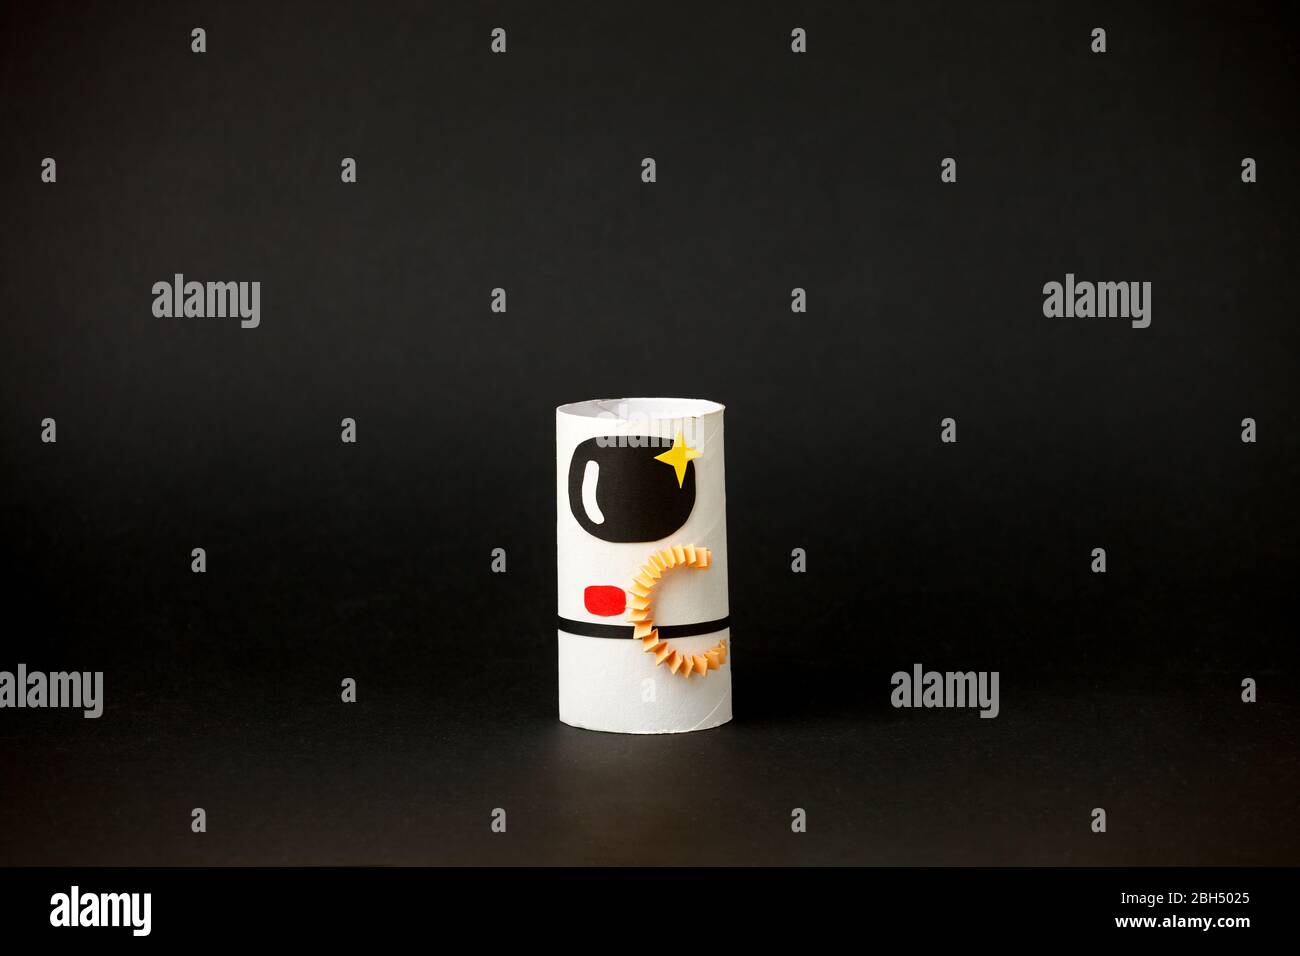 Spielzeug Astronaut auf schwarzem Hintergrund mit Kopie Raum für Text. Konzept der Geschäftseinführung, Start-up, Handwerk, diy, kreative Idee aus Toilettenröhre, rec Stockfoto